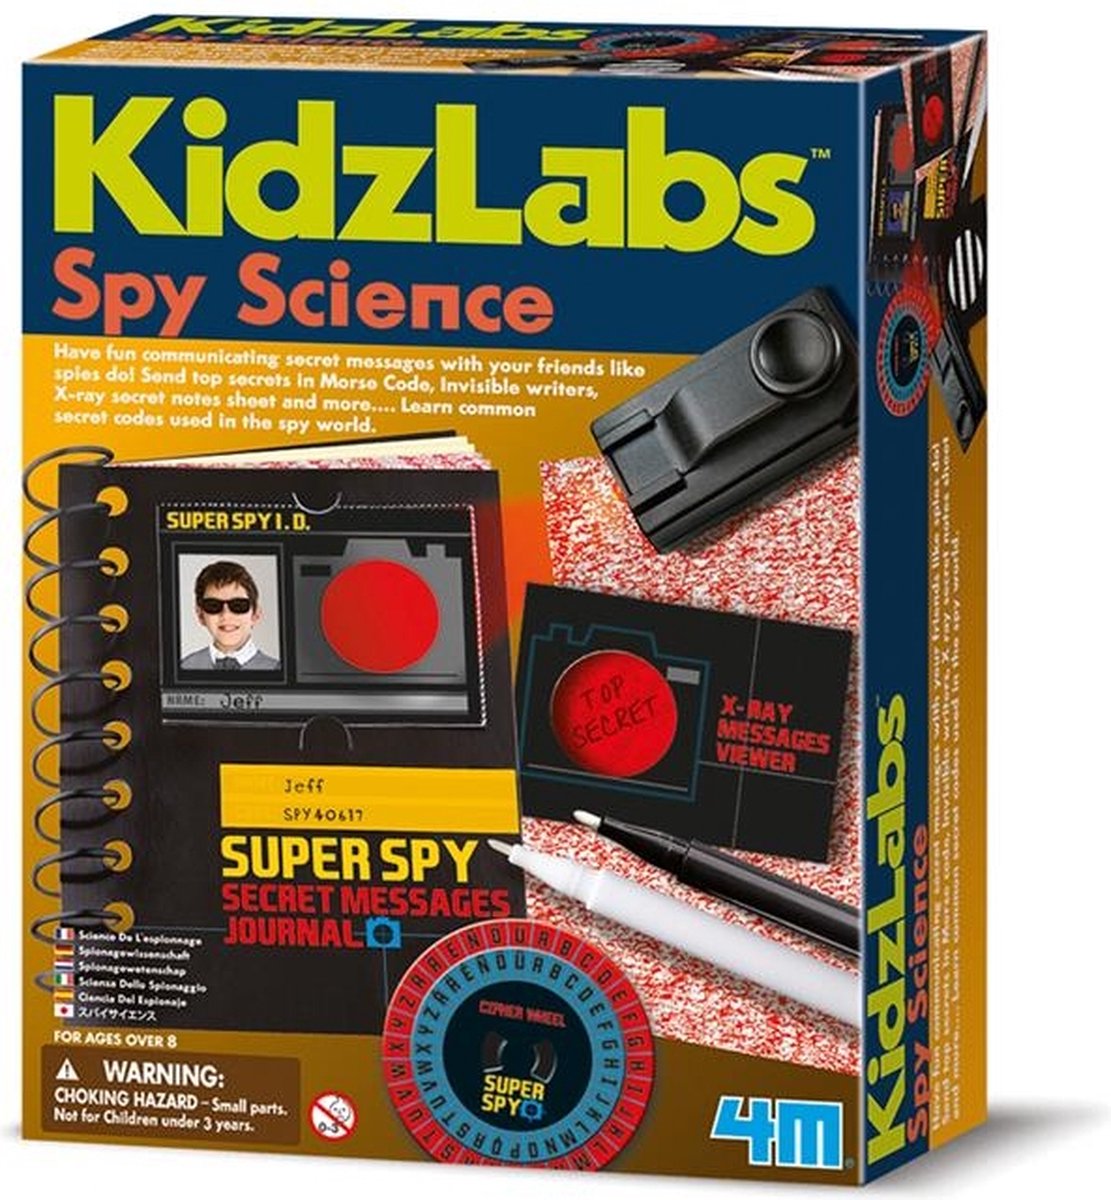 Kit détective espion pour enfants Ensemble de jouets STEM de